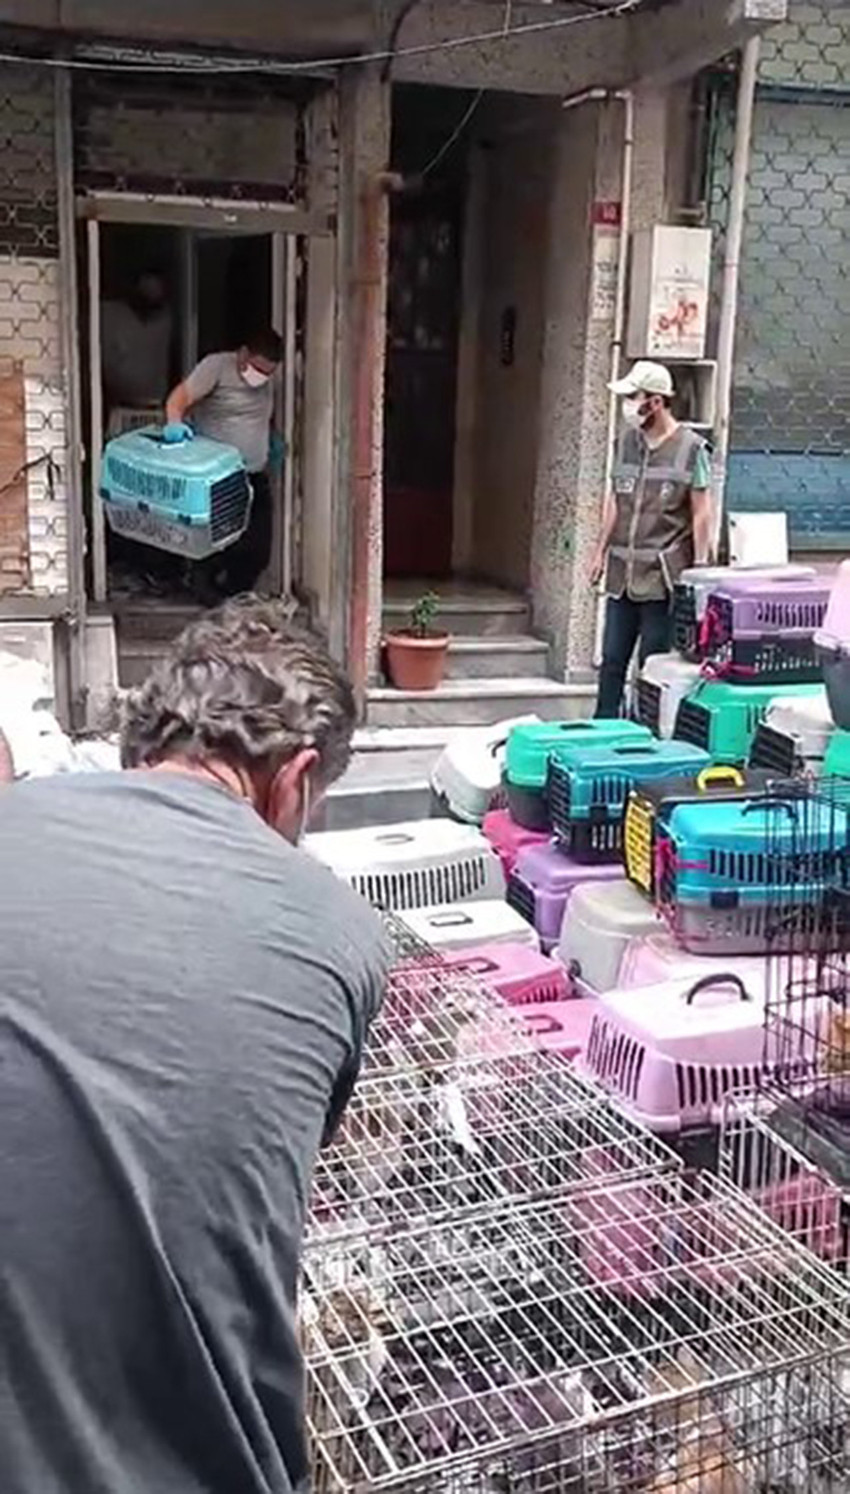 İstanbul Şişli'de gelen kötü kokular sonrasında girilen bir evde "hayvanseverim" diyen bir kadının 85 kediyi ölüme terk ettiği ortaya çıktı...